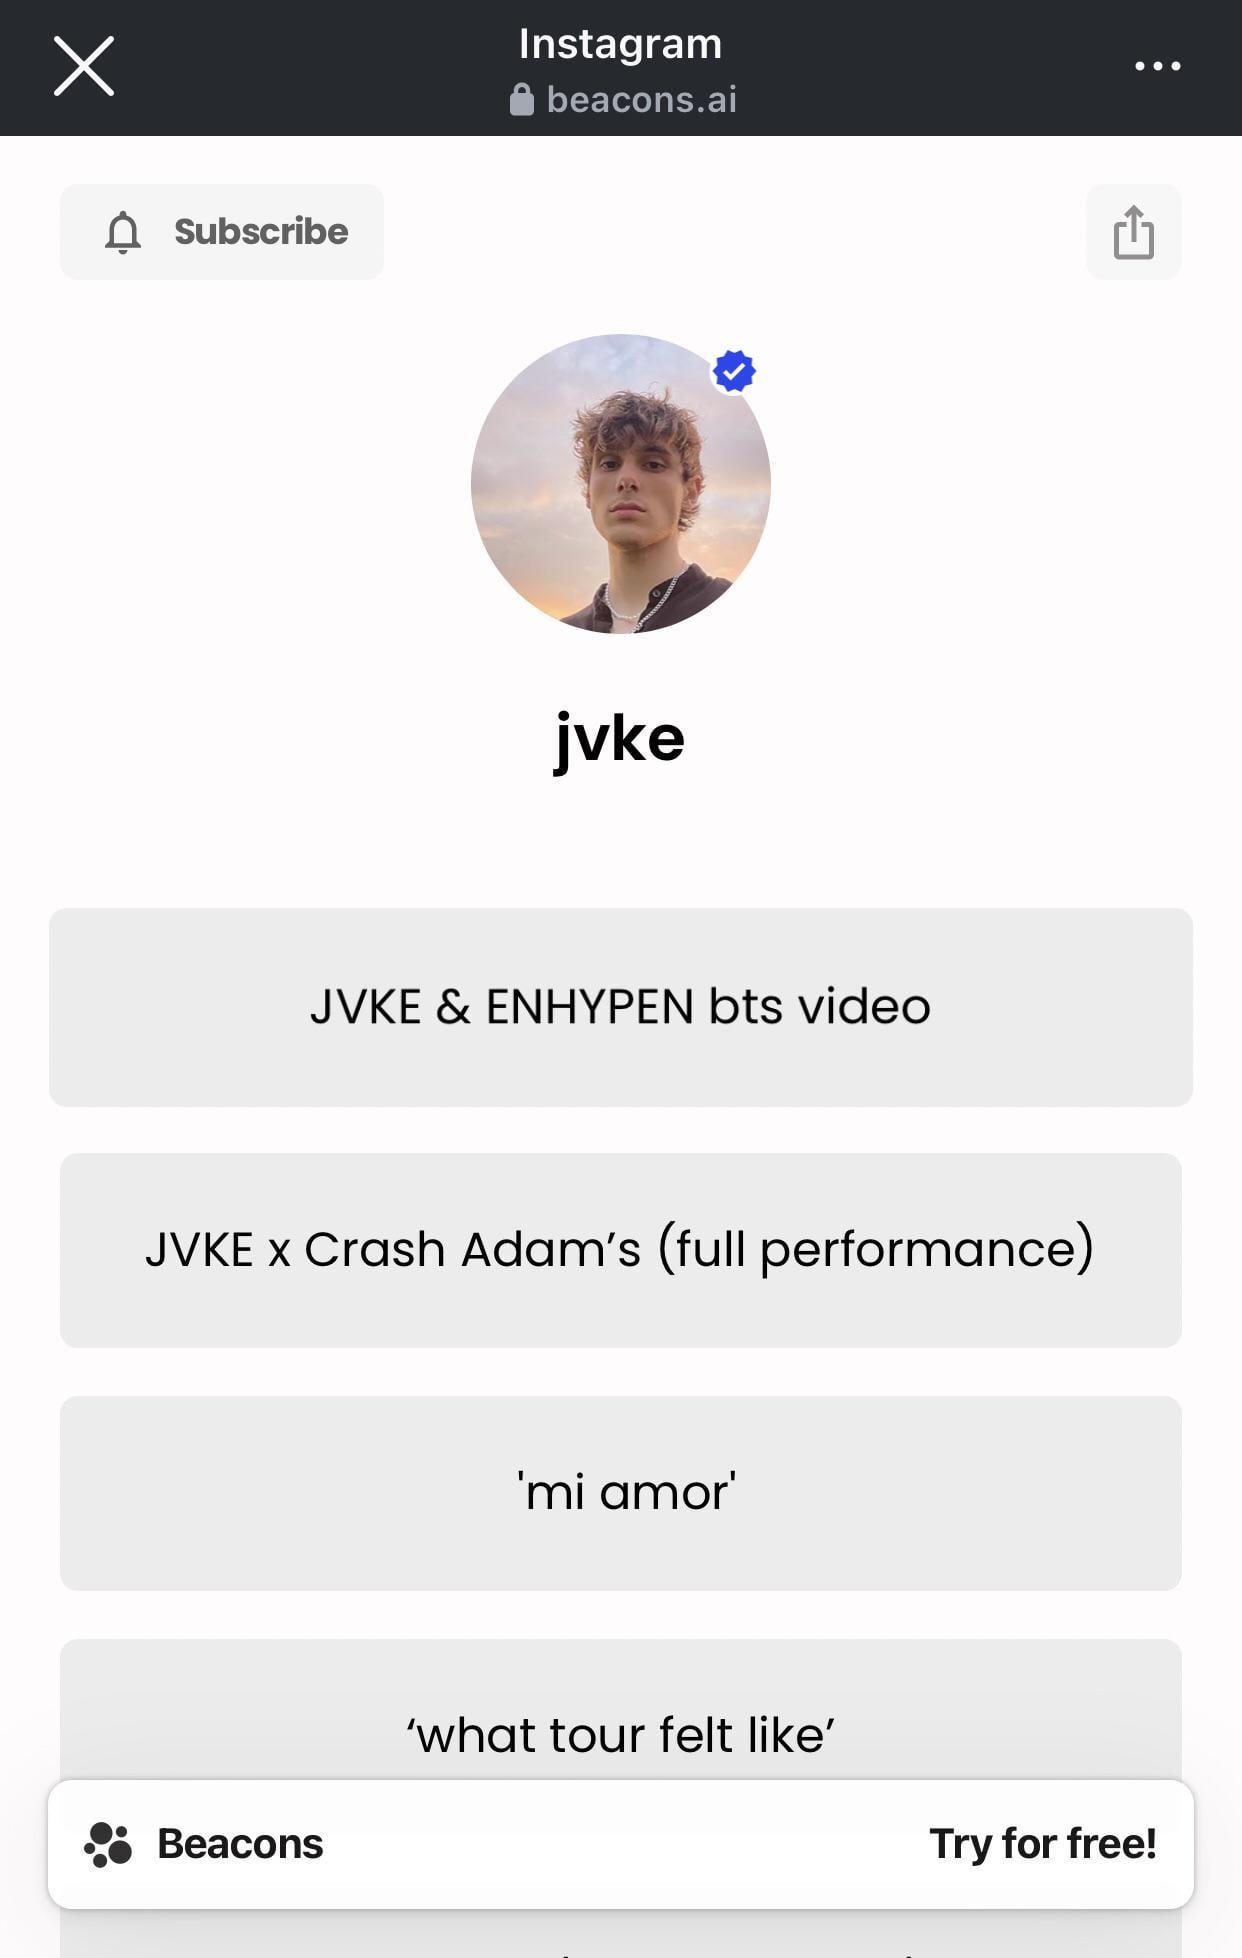 bts video of JVKE x Enhypen